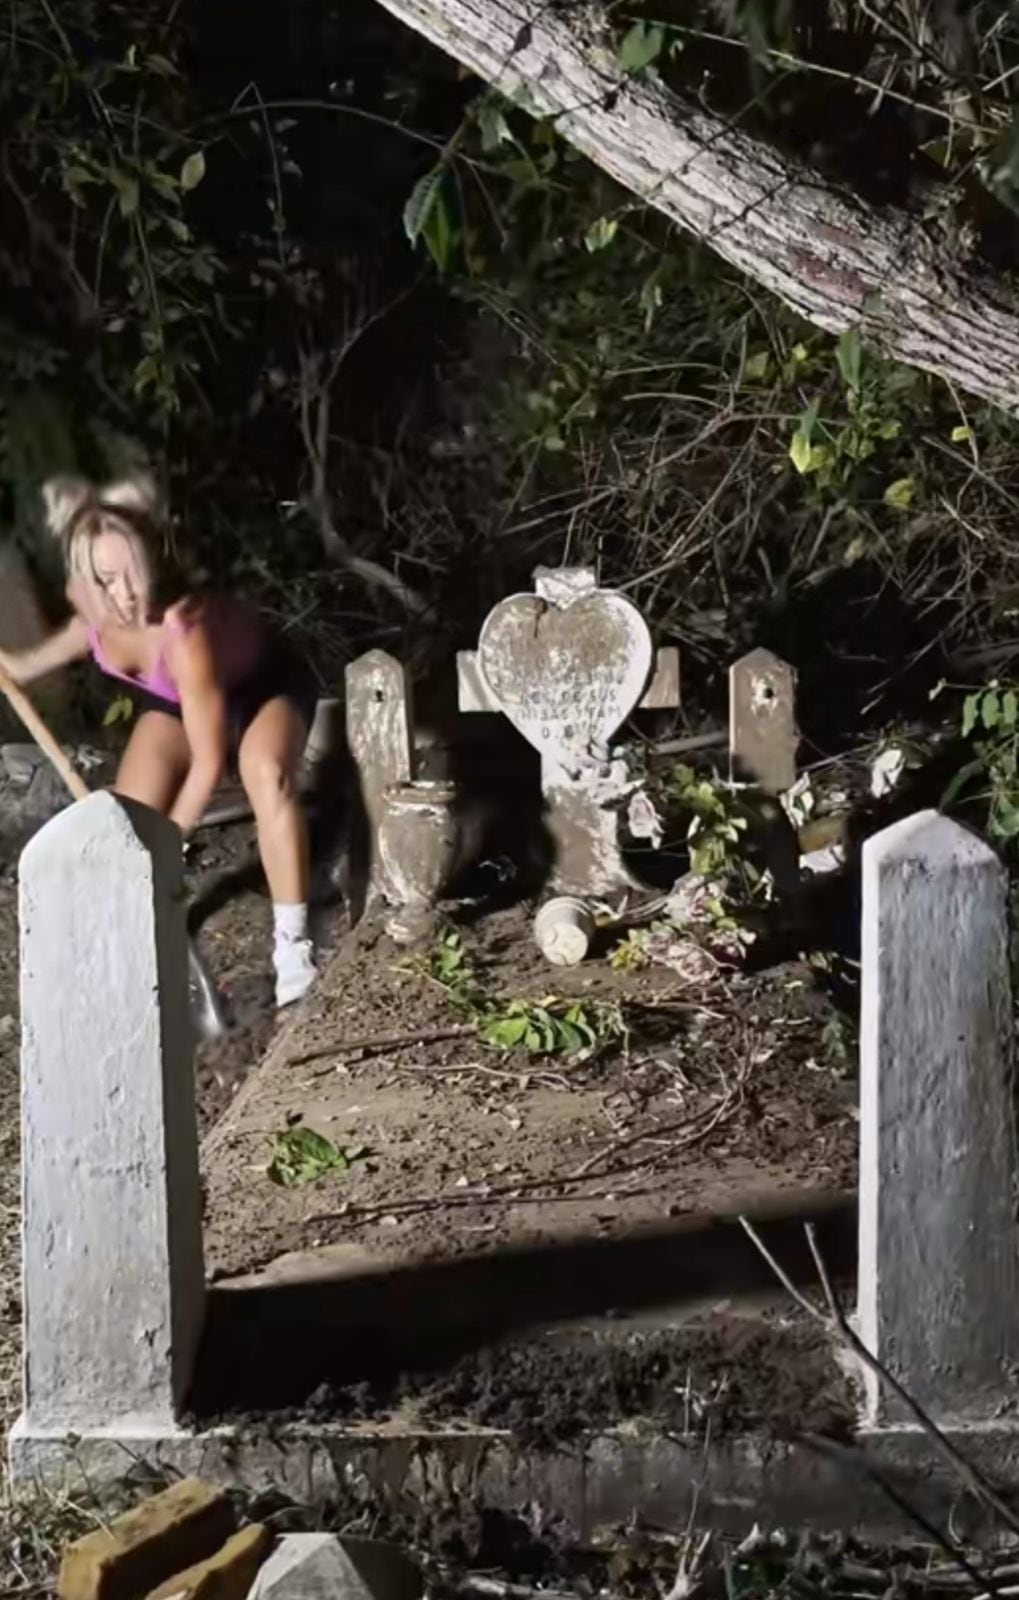 La mujer usa sus propios productos de aseo para su trabajo en el cementerio